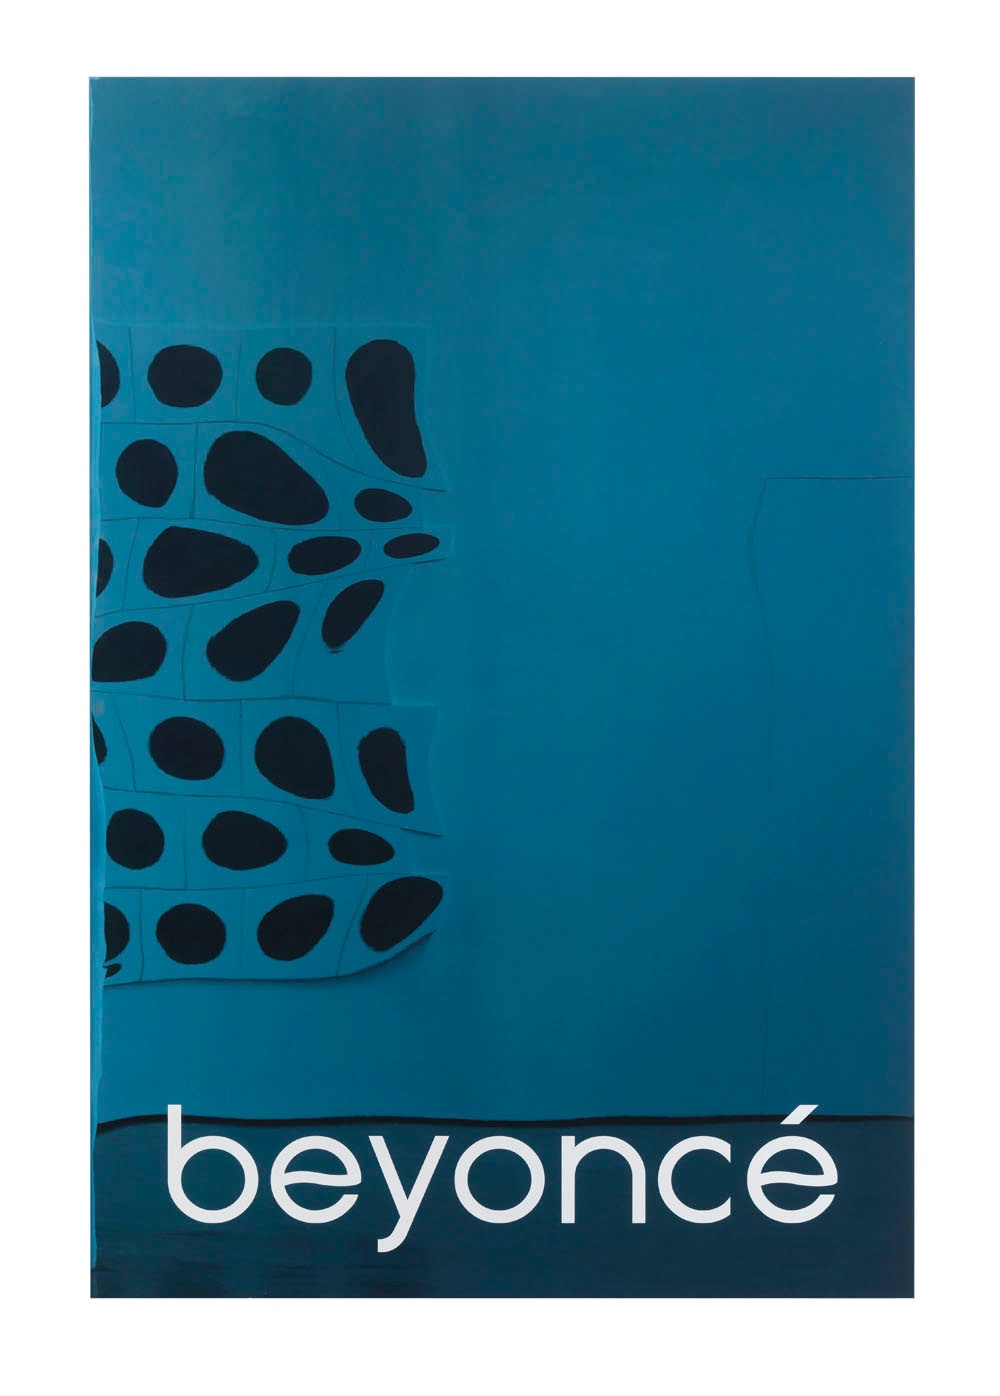 Beyonce, 2013. Silkscreen enamel on polished steel on aluminum honeycomb panel. 185.4 x 121.9 cm